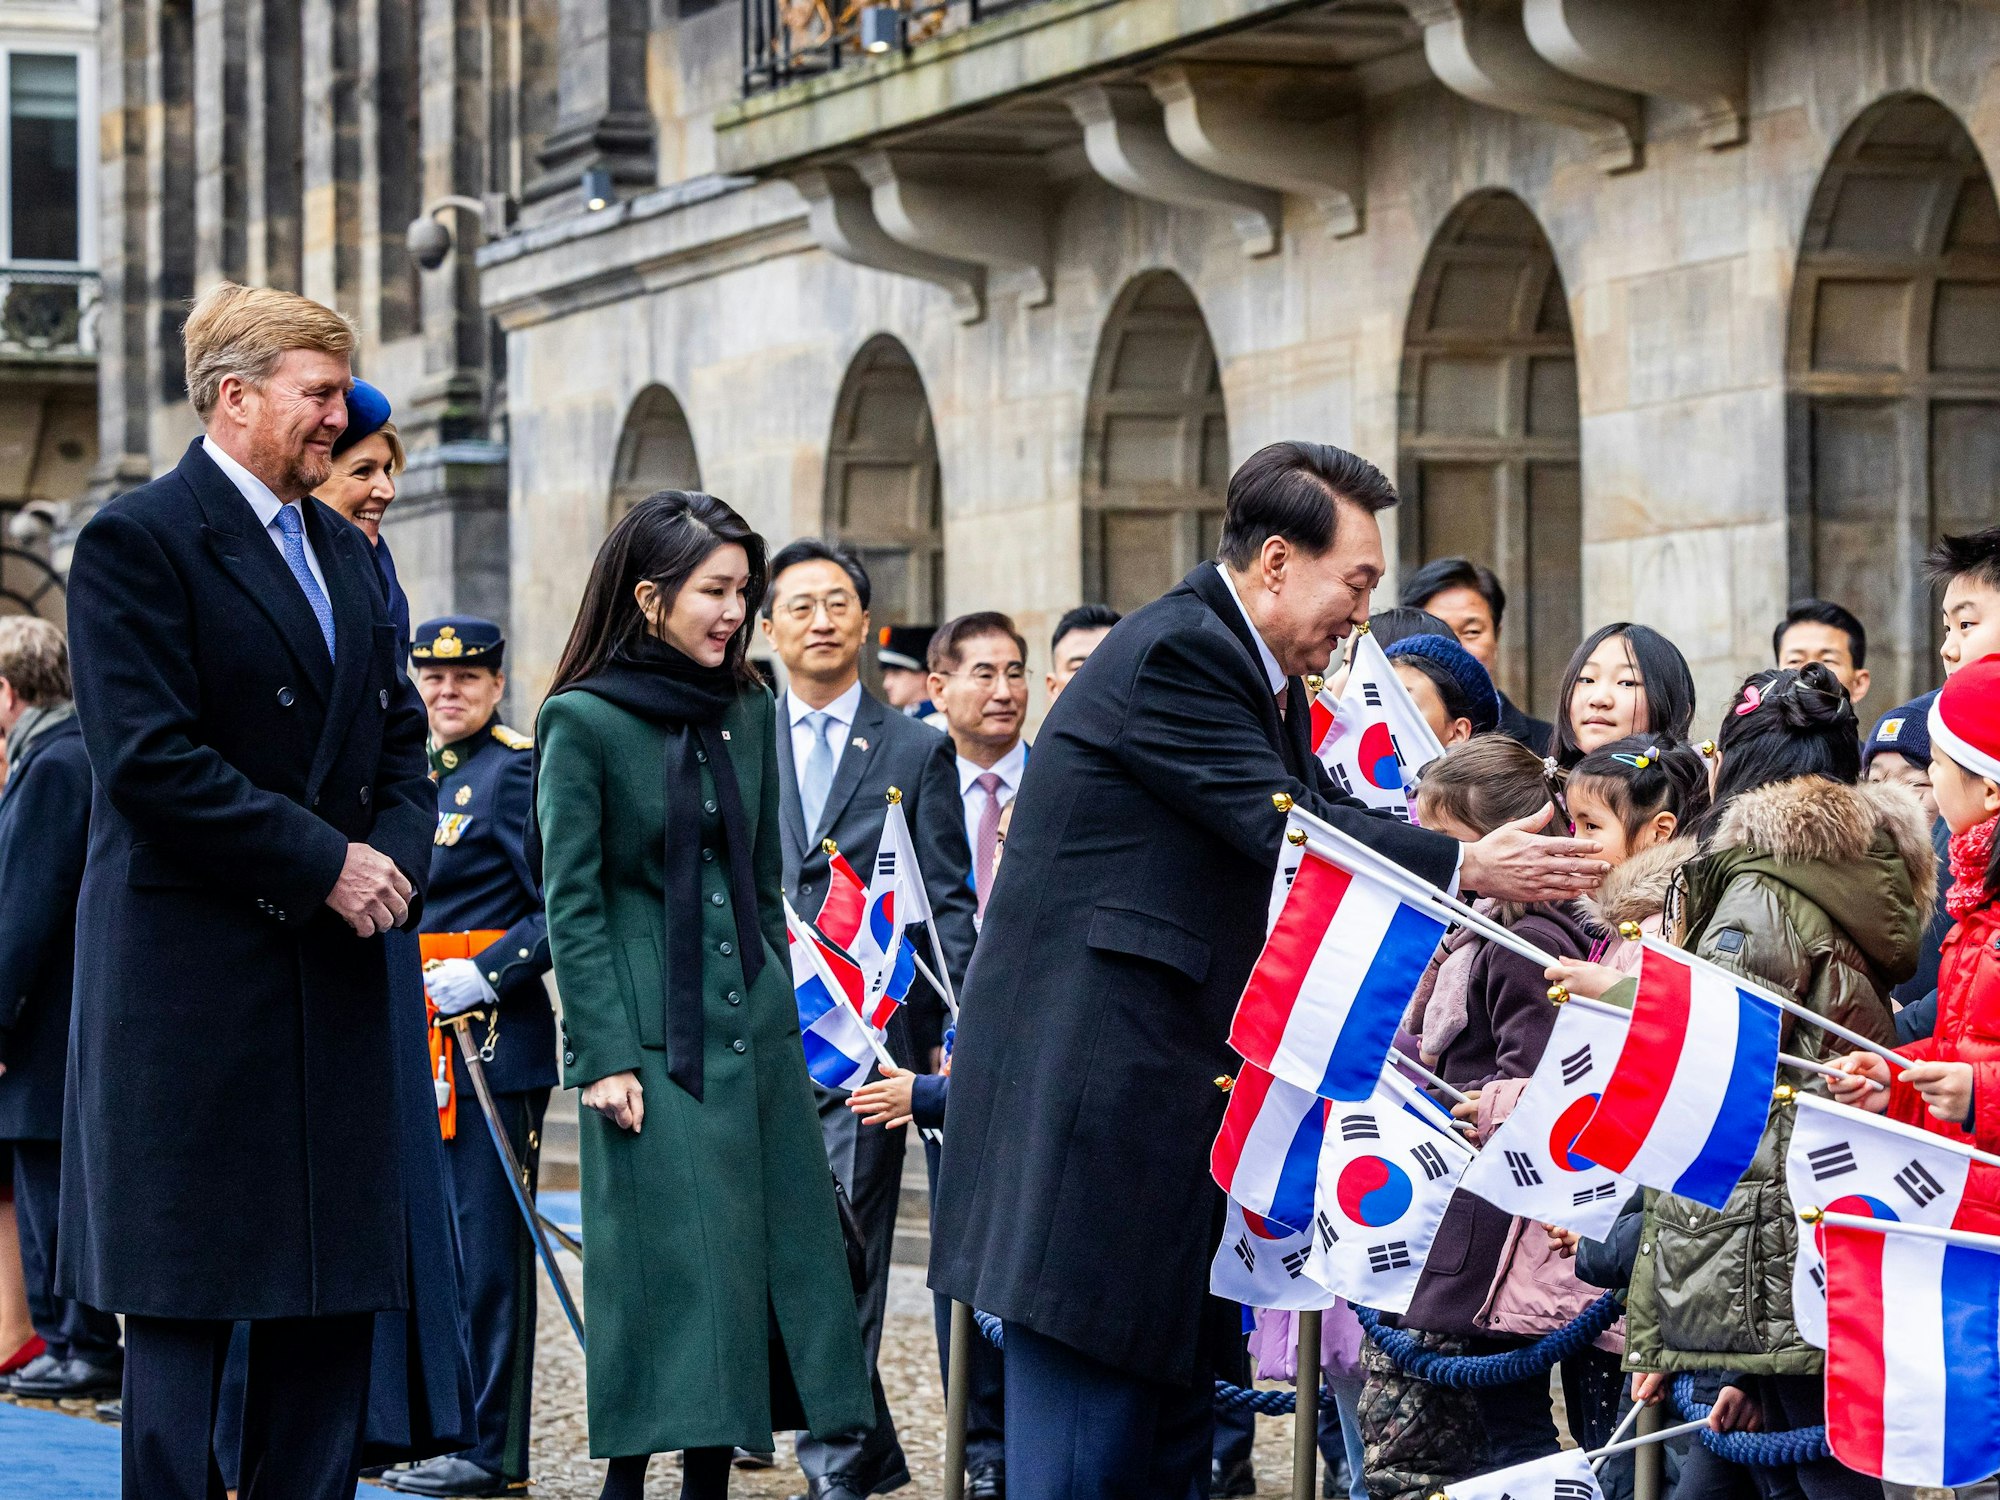 König Willem-Alexander und Königin Maxima begrüßen die Öffentlichkeit zusammen mit dem südkoreanischen Präsidenten Yoon Suk Yeo und seiner Frau Kim Keon Hee im Königlichen Palast zu Beginn des südkoreanischen Staatsbesuchs in den Niederlanden